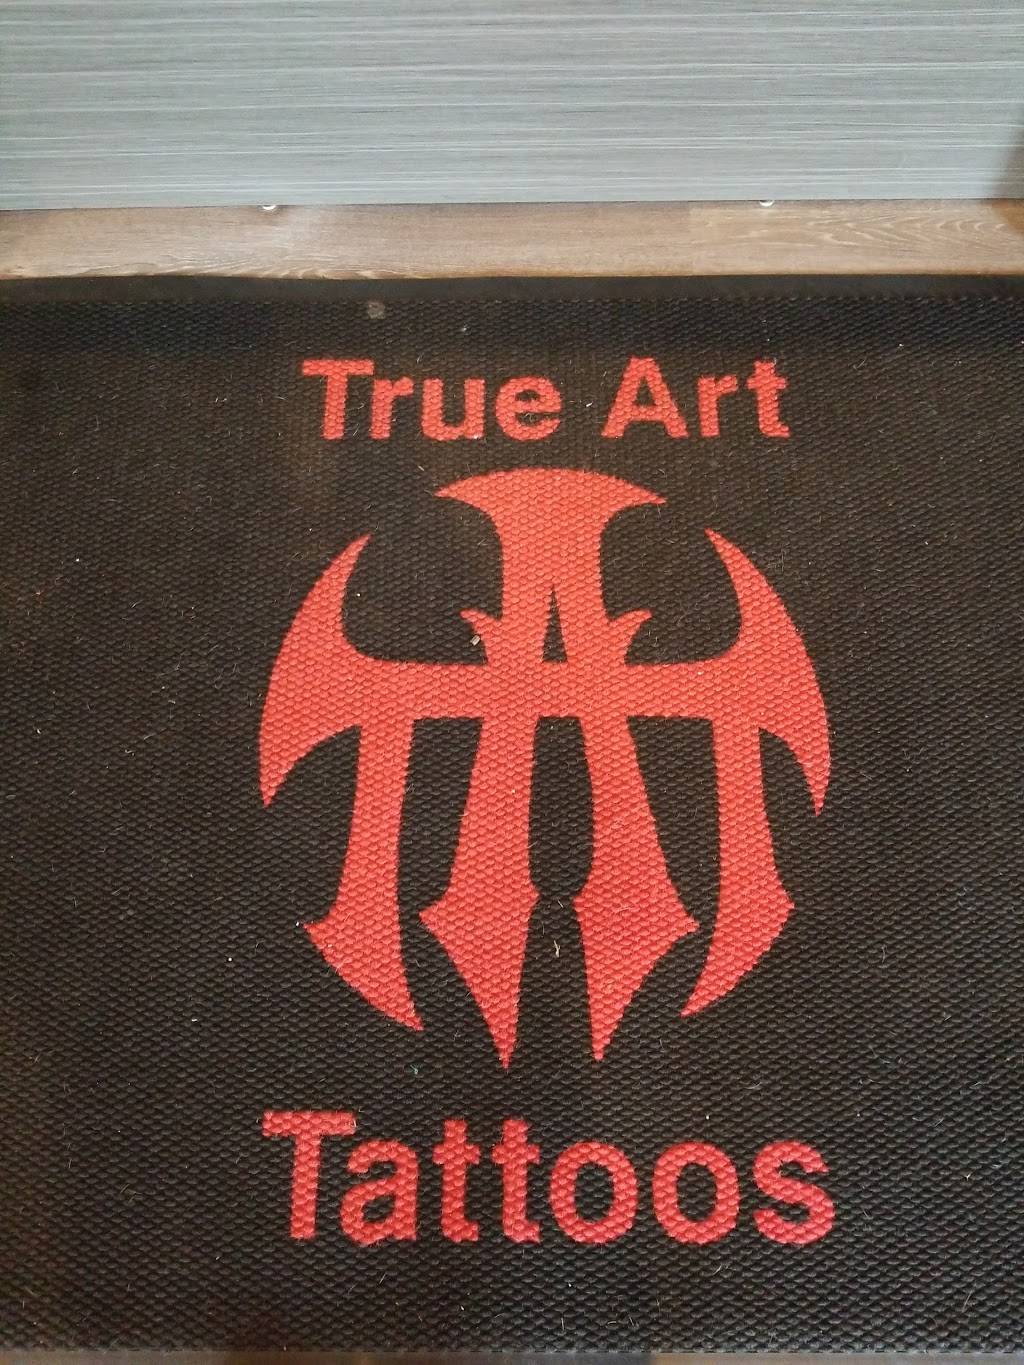 True Art Tattoos, Inc | 4118 Lorain Ave, Cleveland, OH 44113 | Phone: (216) 772-8288